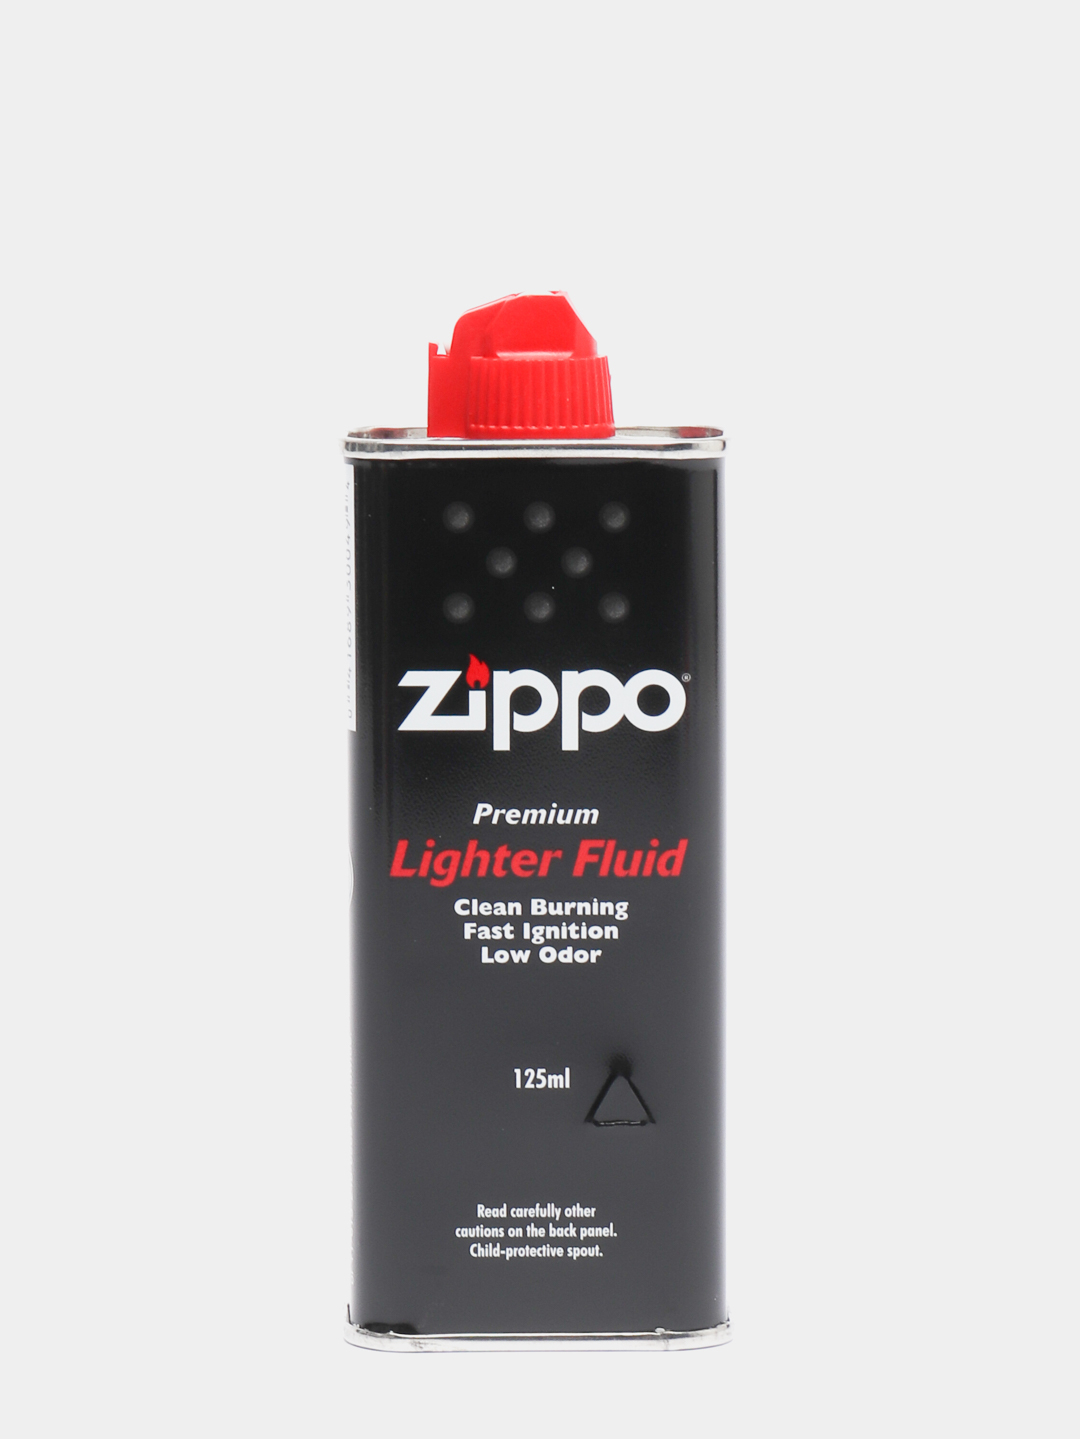  Zippo в канистре, объем 125 мл, топливо для бензиновых зажигалок .